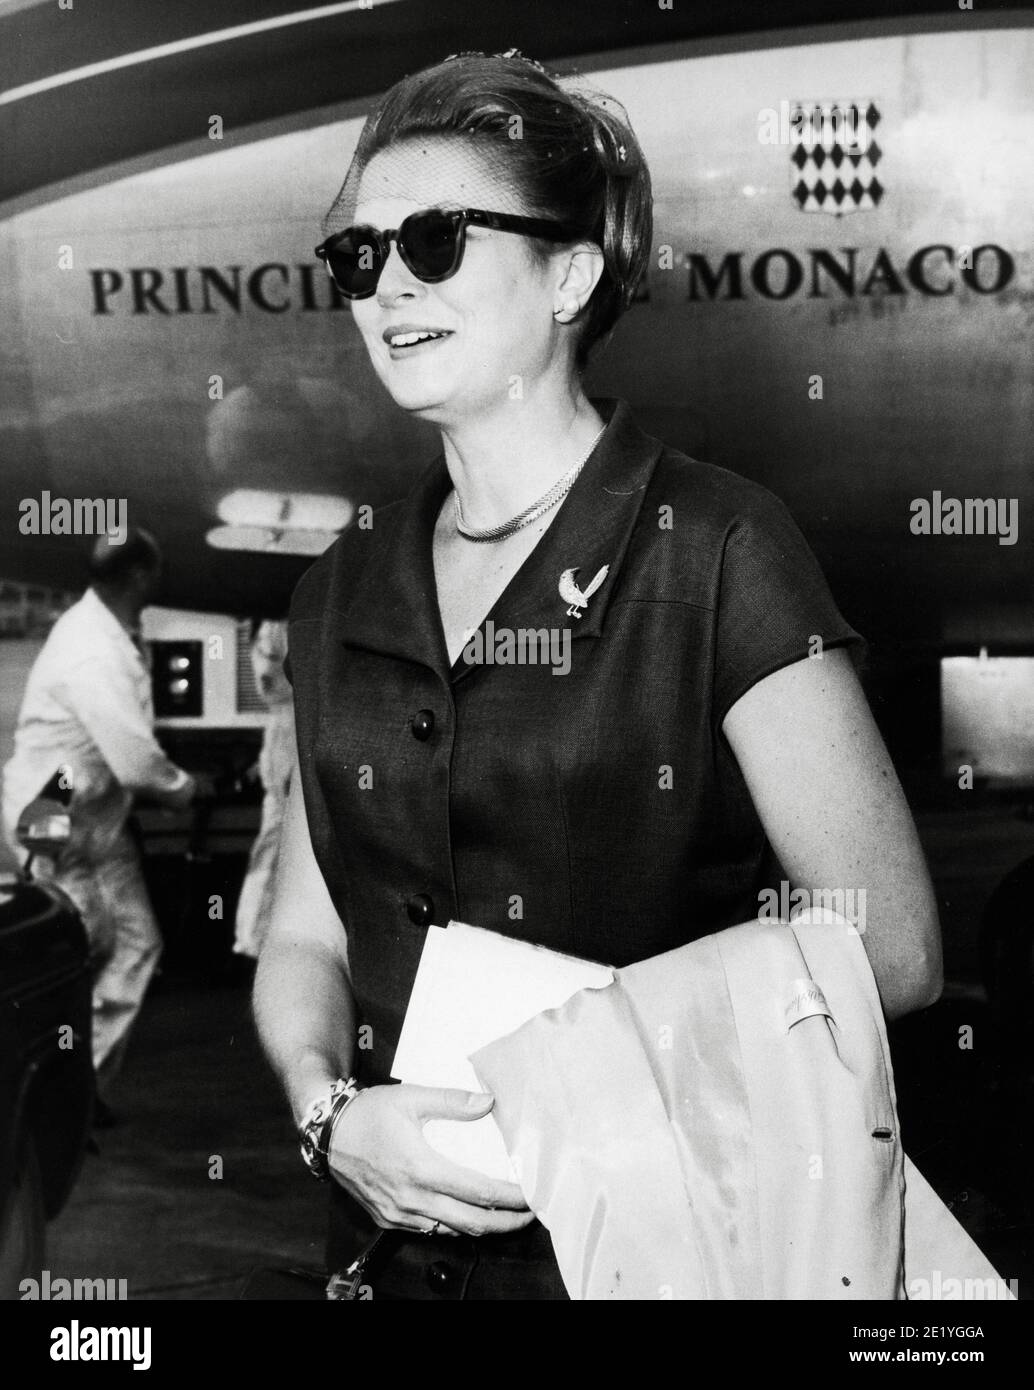 Grace Kelly, principessa di Monaco, indossa occhiali da sole al suo arrivo  all'aeroporto di Londra, circa 1965 / riferimento file n. 34082-002THA Foto  stock - Alamy